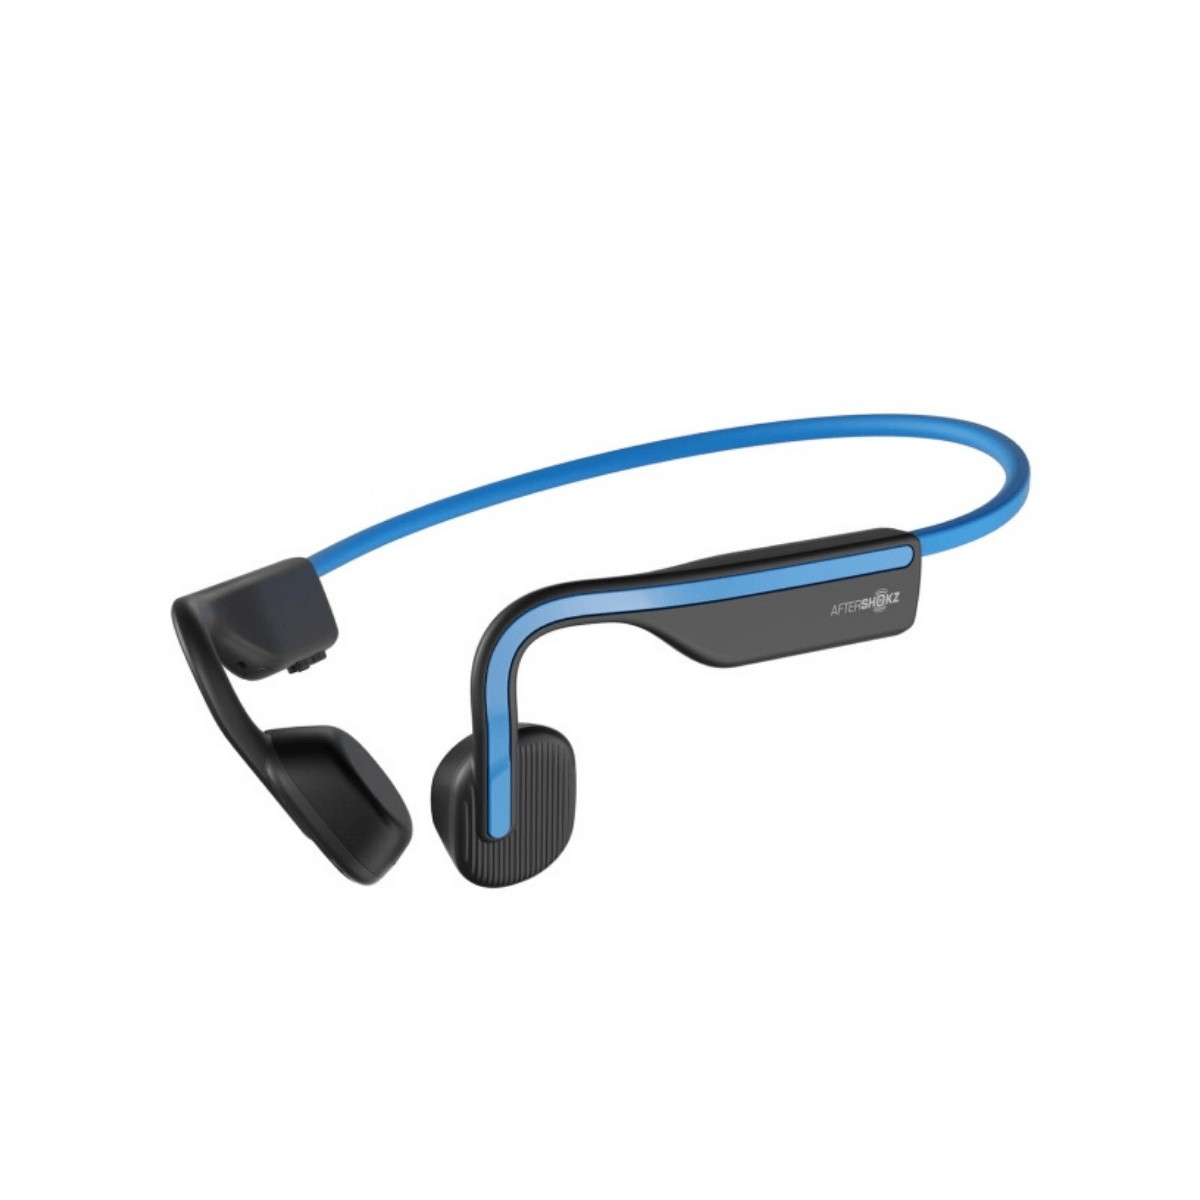 Aftershokz Openmove Wireless Headphones Blue Black